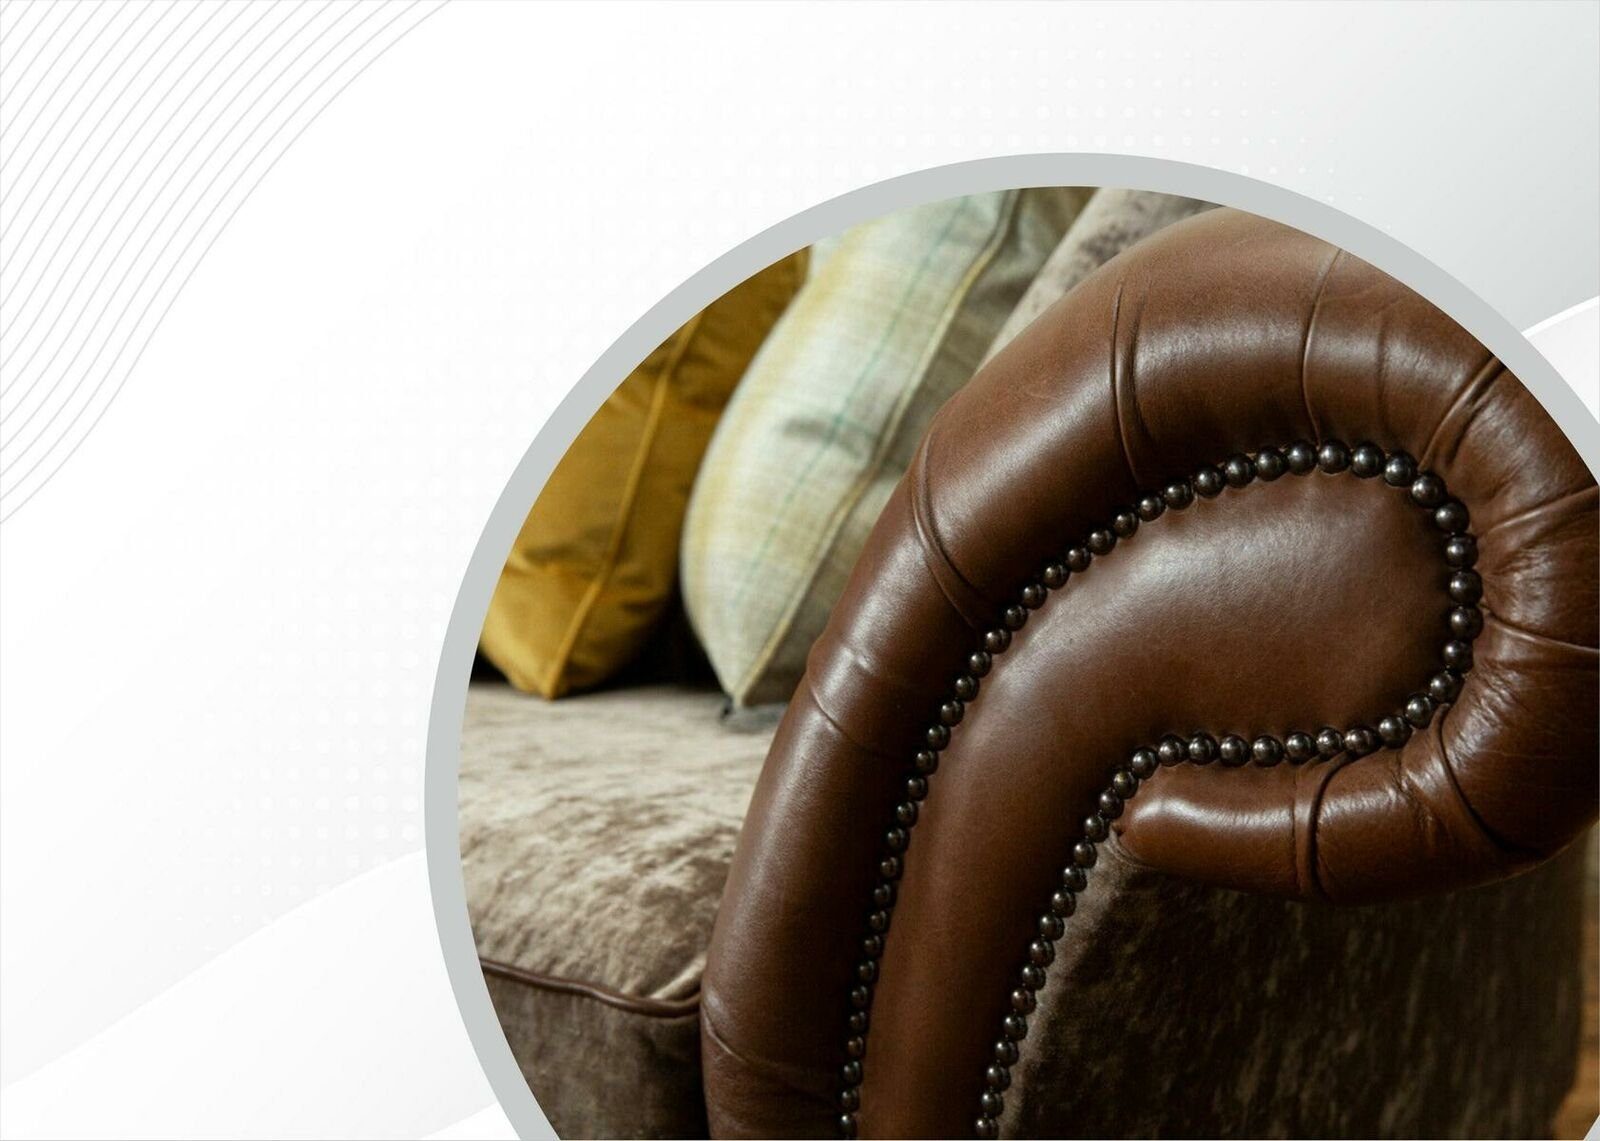 Luxus Couchen JVmoebel Chesterfield-Sofa, Leder 2 Modern Chesterfield Sofa Design Sitzer Braun Wohnzimmer